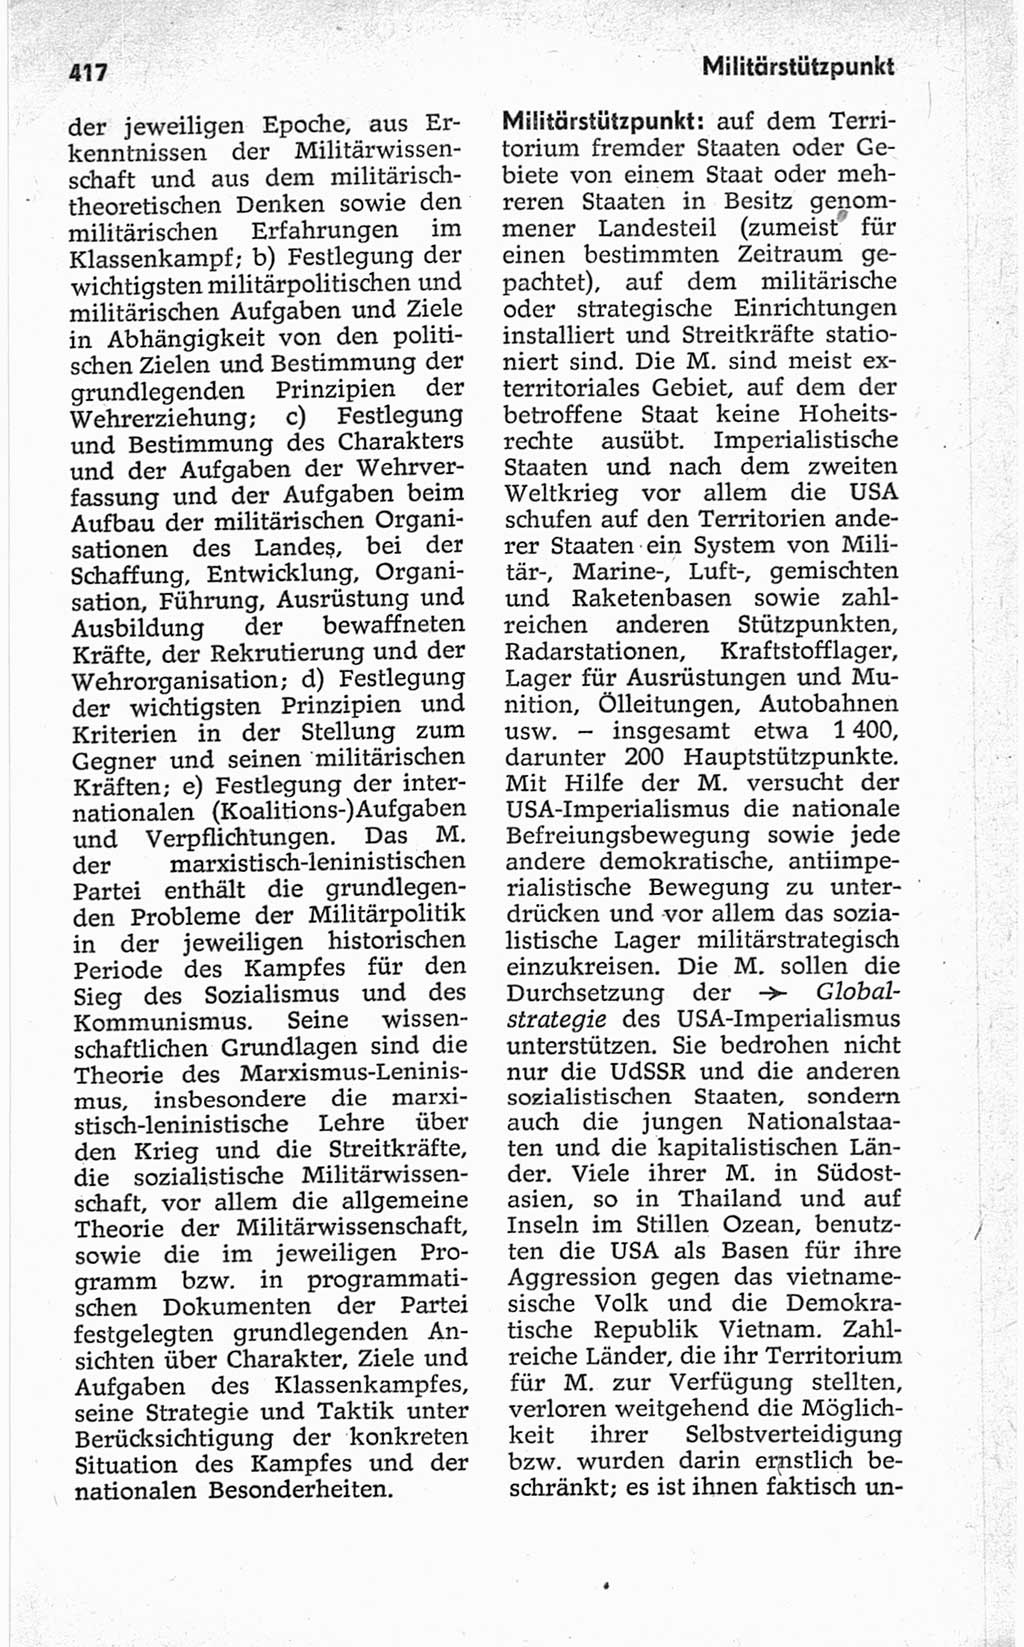 Kleines politisches Wörterbuch [Deutsche Demokratische Republik (DDR)] 1967, Seite 417 (Kl. pol. Wb. DDR 1967, S. 417)